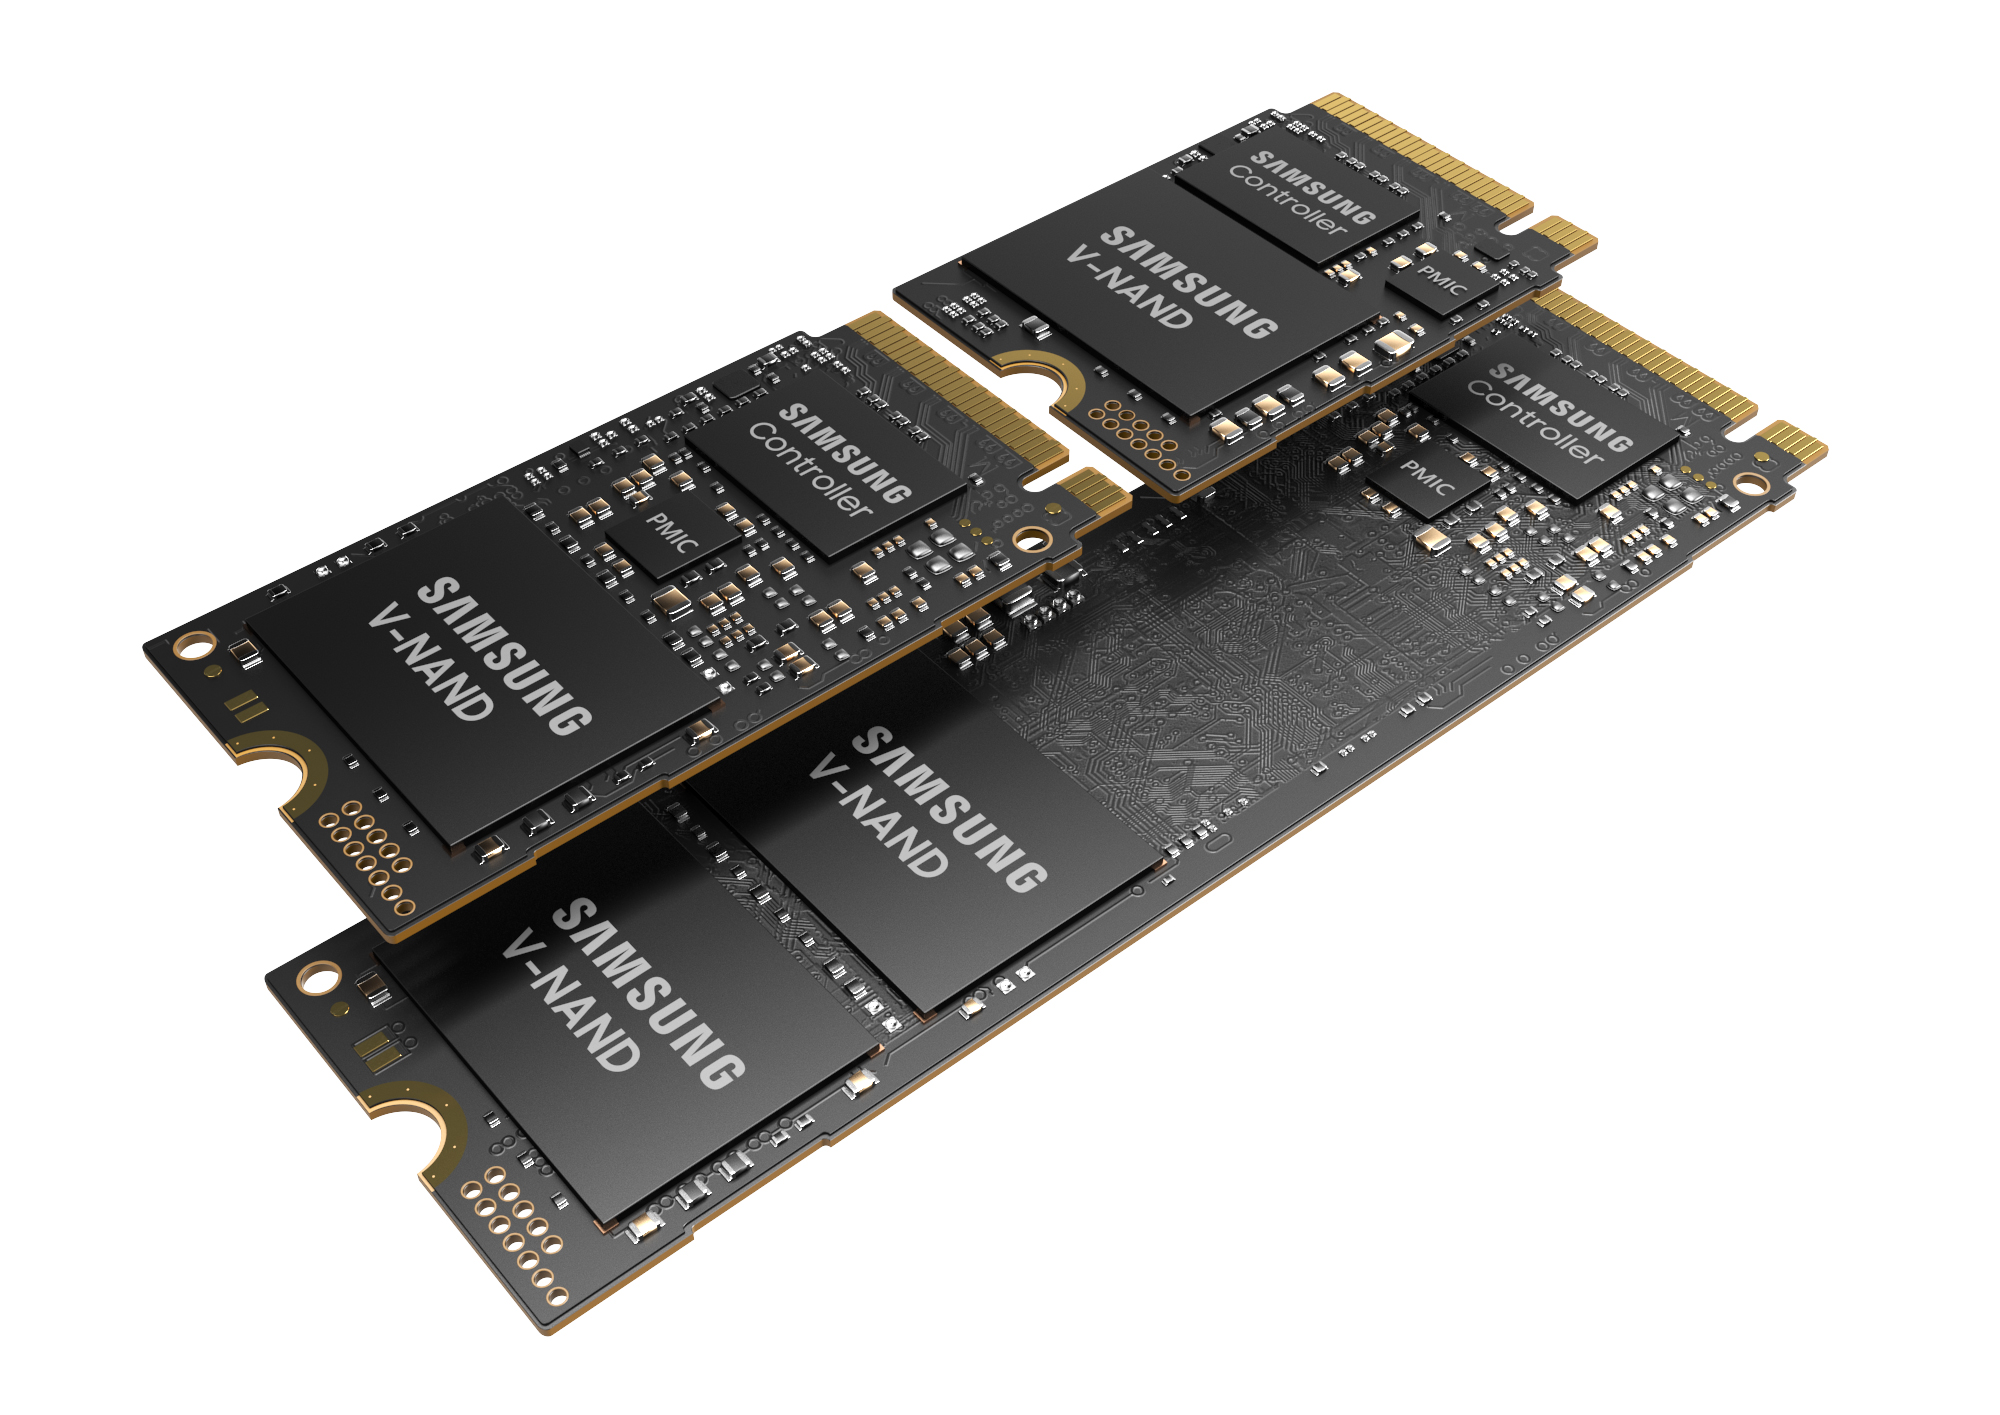 Immagine pubblicata in relazione al seguente contenuto: Samsung annuncia la linea di drive SSD PCIe 4.0 NVMe M.2 PM9C1a | Nome immagine: news34078_Samsung-PM9C1a-SSD_2.jpg